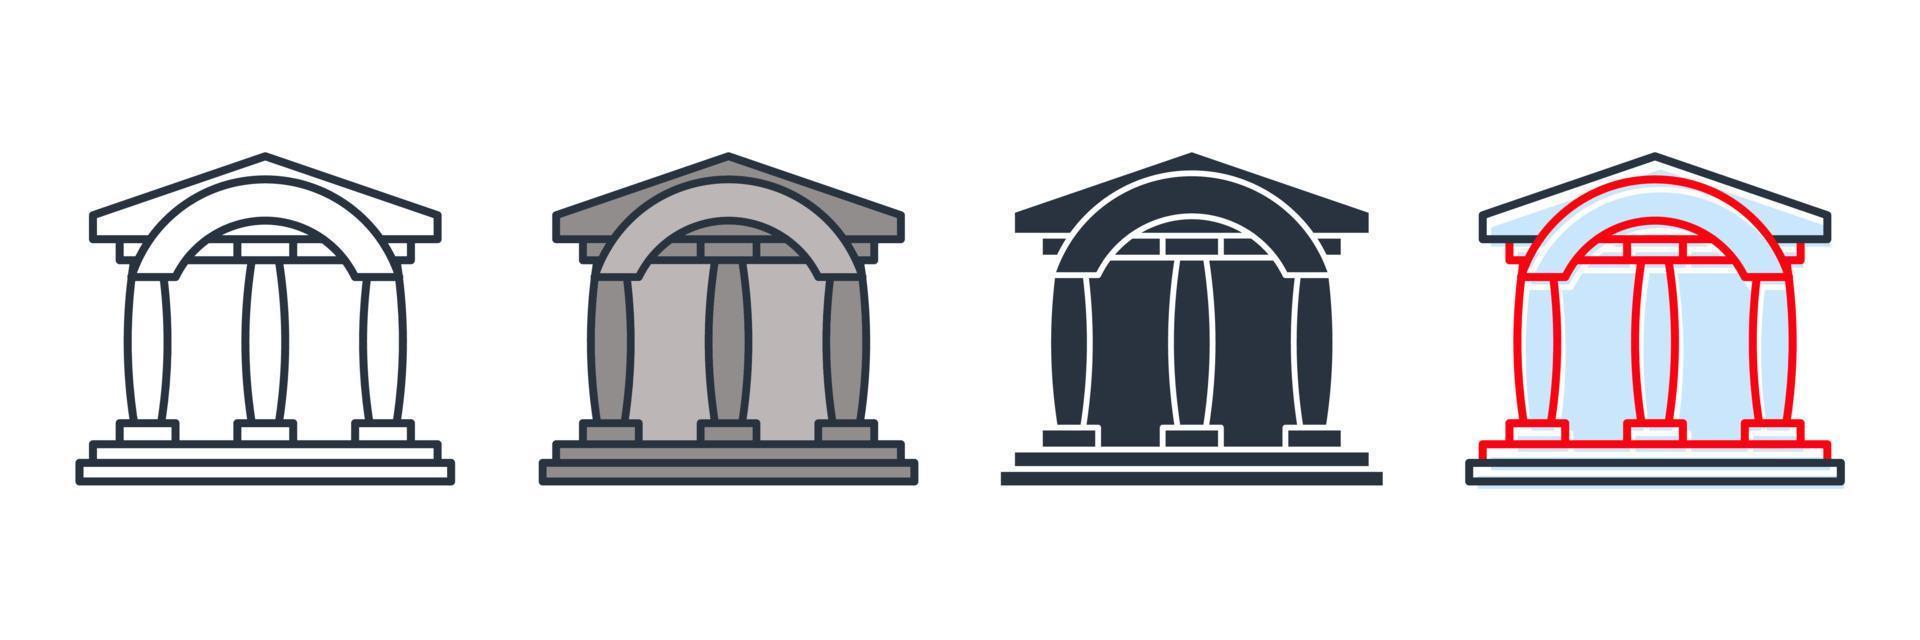 Museumsgebäude Symbol Logo Vektor Illustration. Museumssymbolvorlage für Grafik- und Webdesign-Sammlung